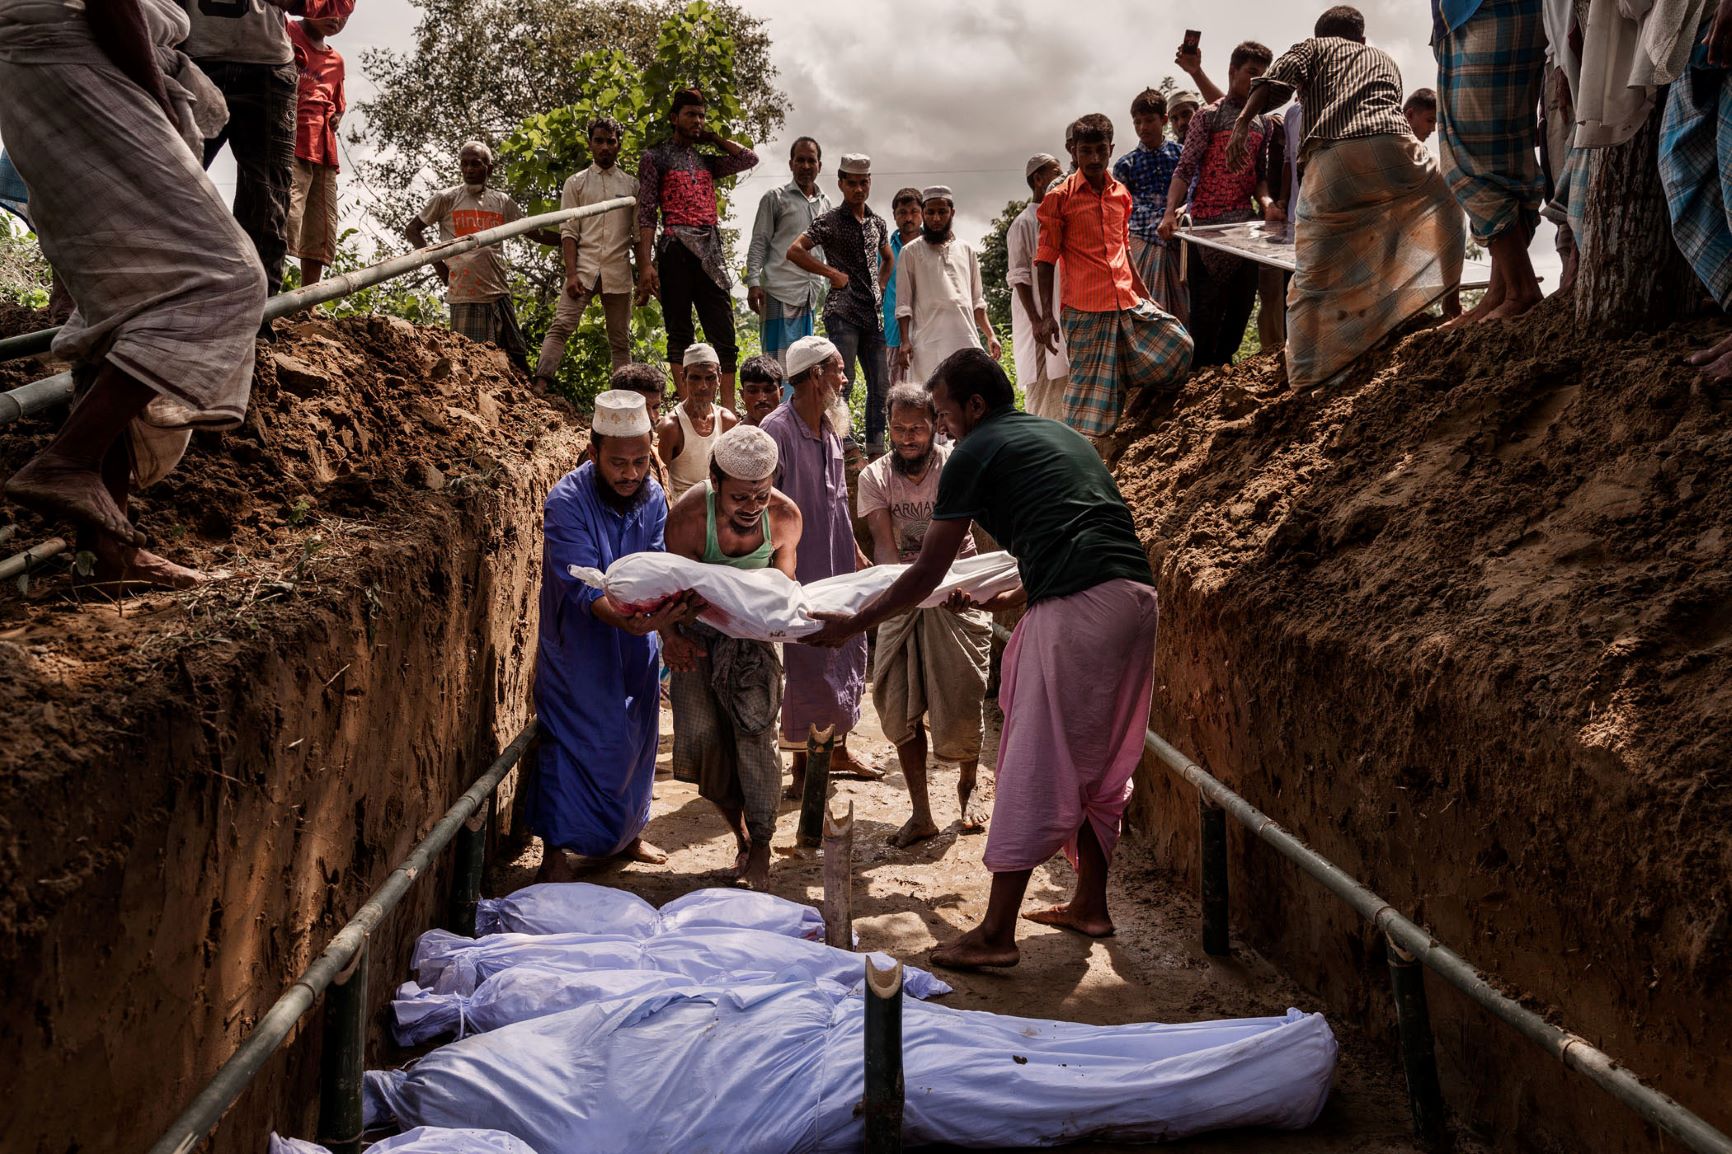 ناکجا آباد | مجموعه عکس Matthew Smith از نسل ‌کشی میانمار